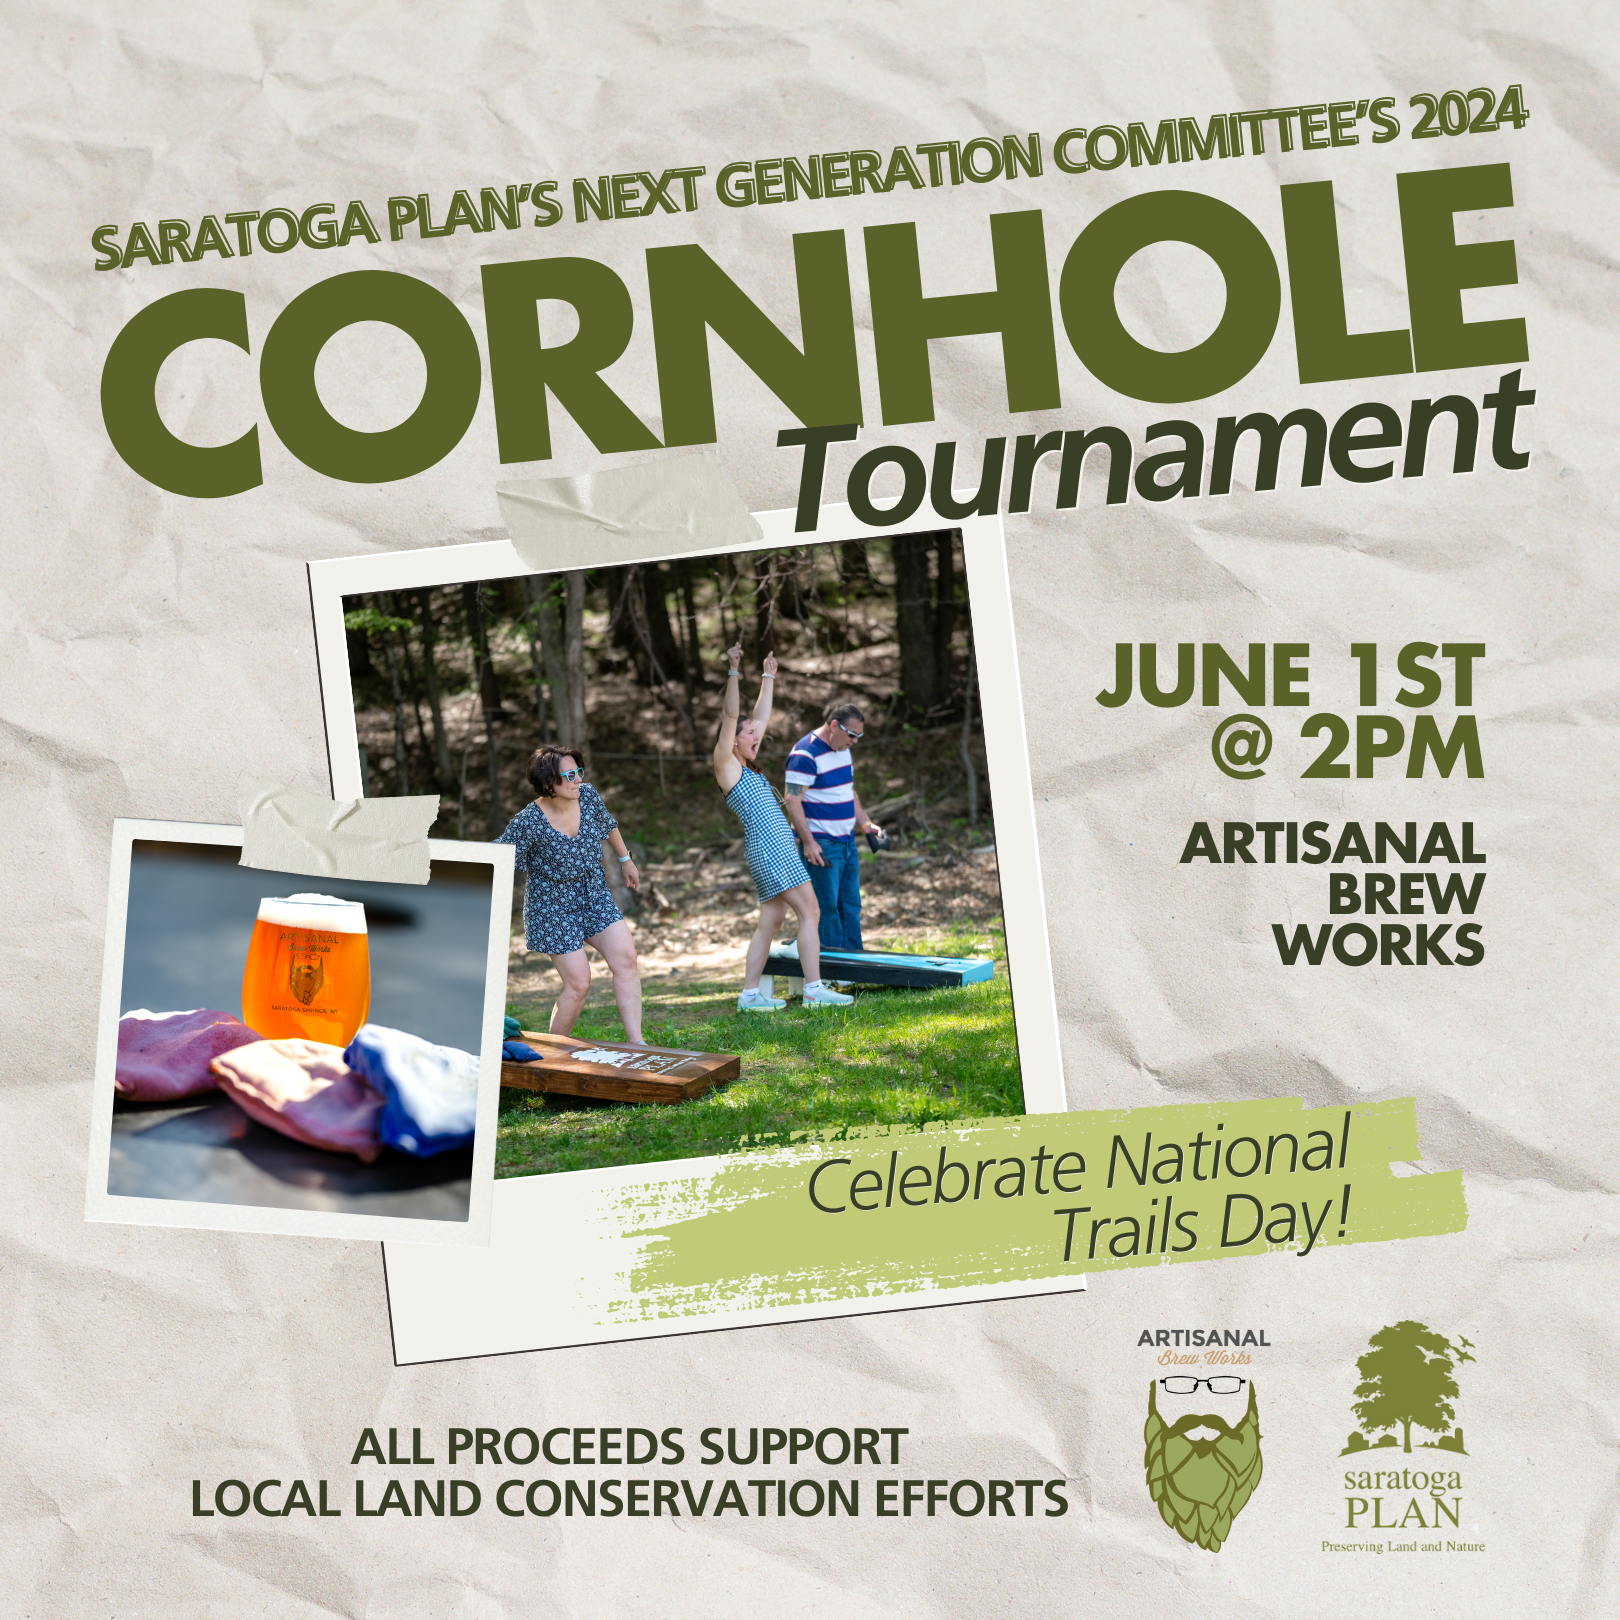 Next Gen's 2024 Cornhole Tournament